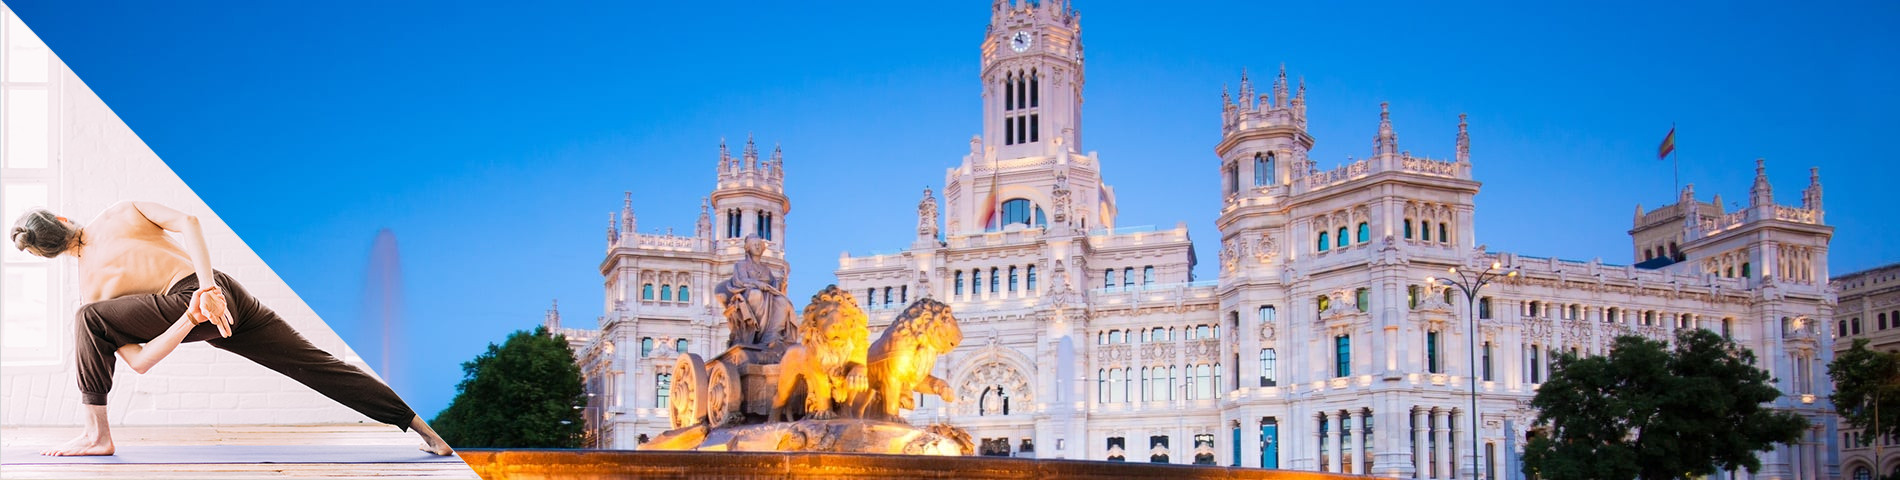 Madrid - Španělština a Jóga